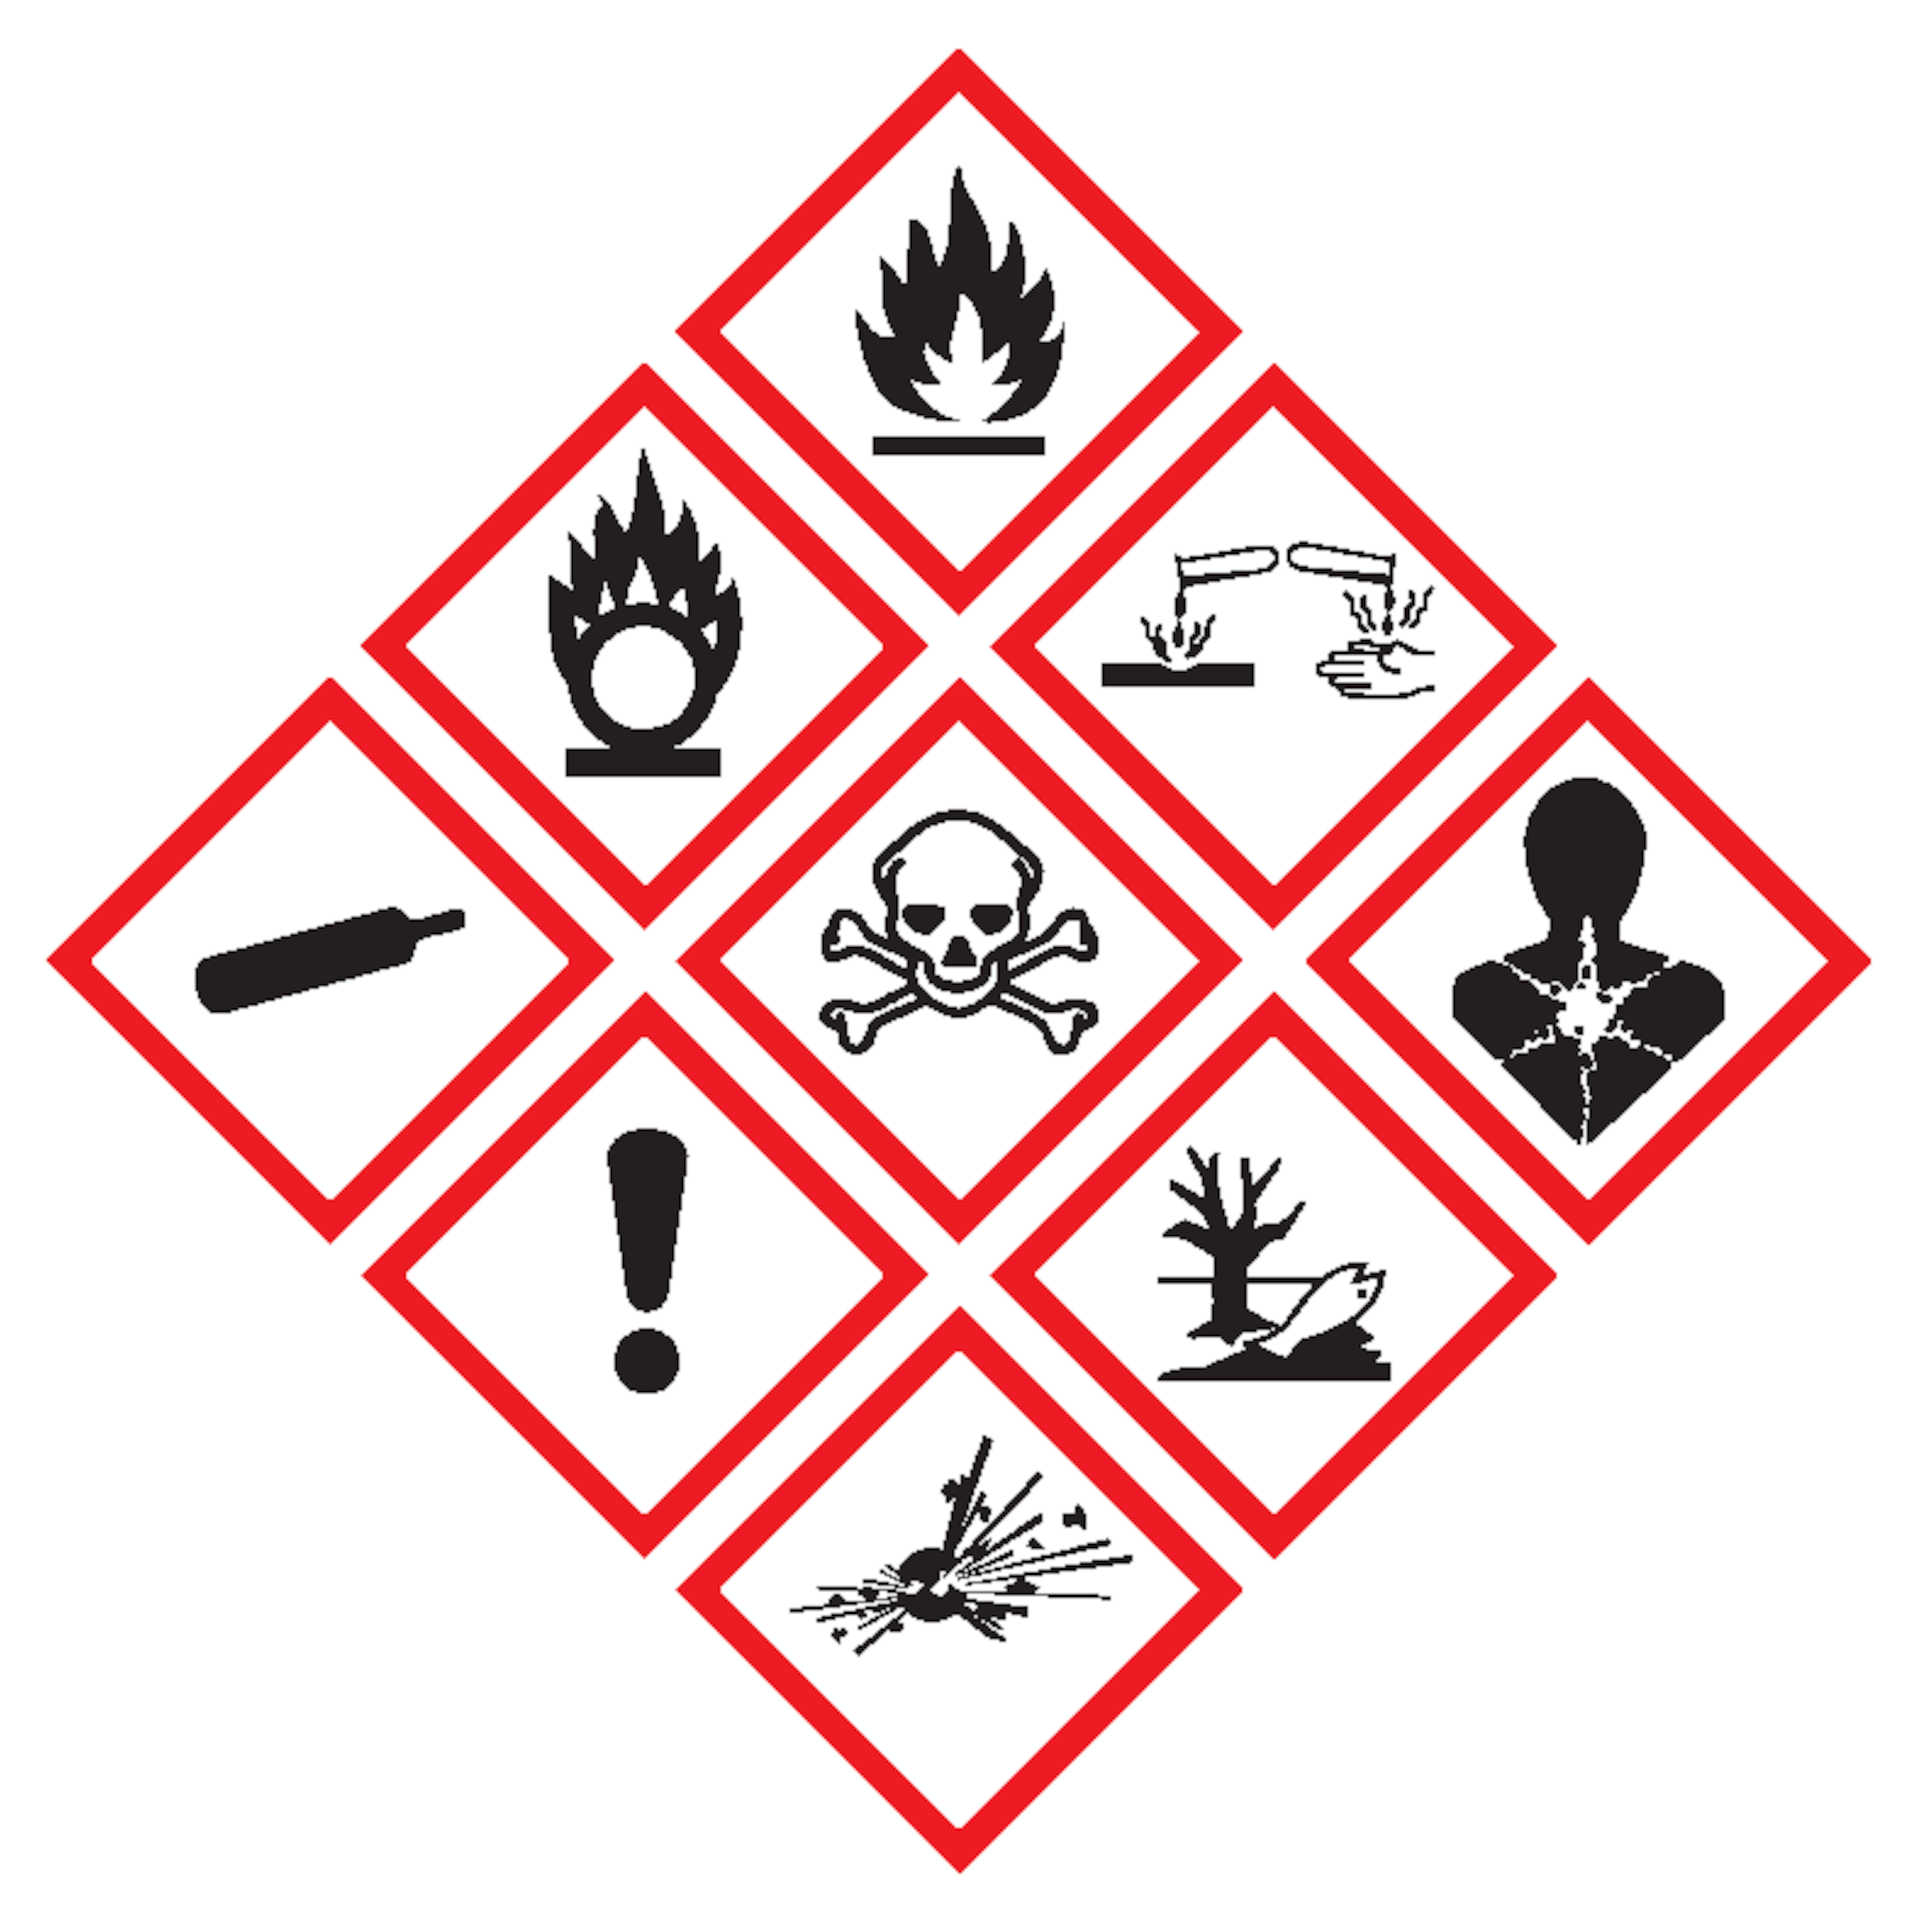 Rischio chimico: i simboli riconosciuti dai regolamenti italiani e comunitari